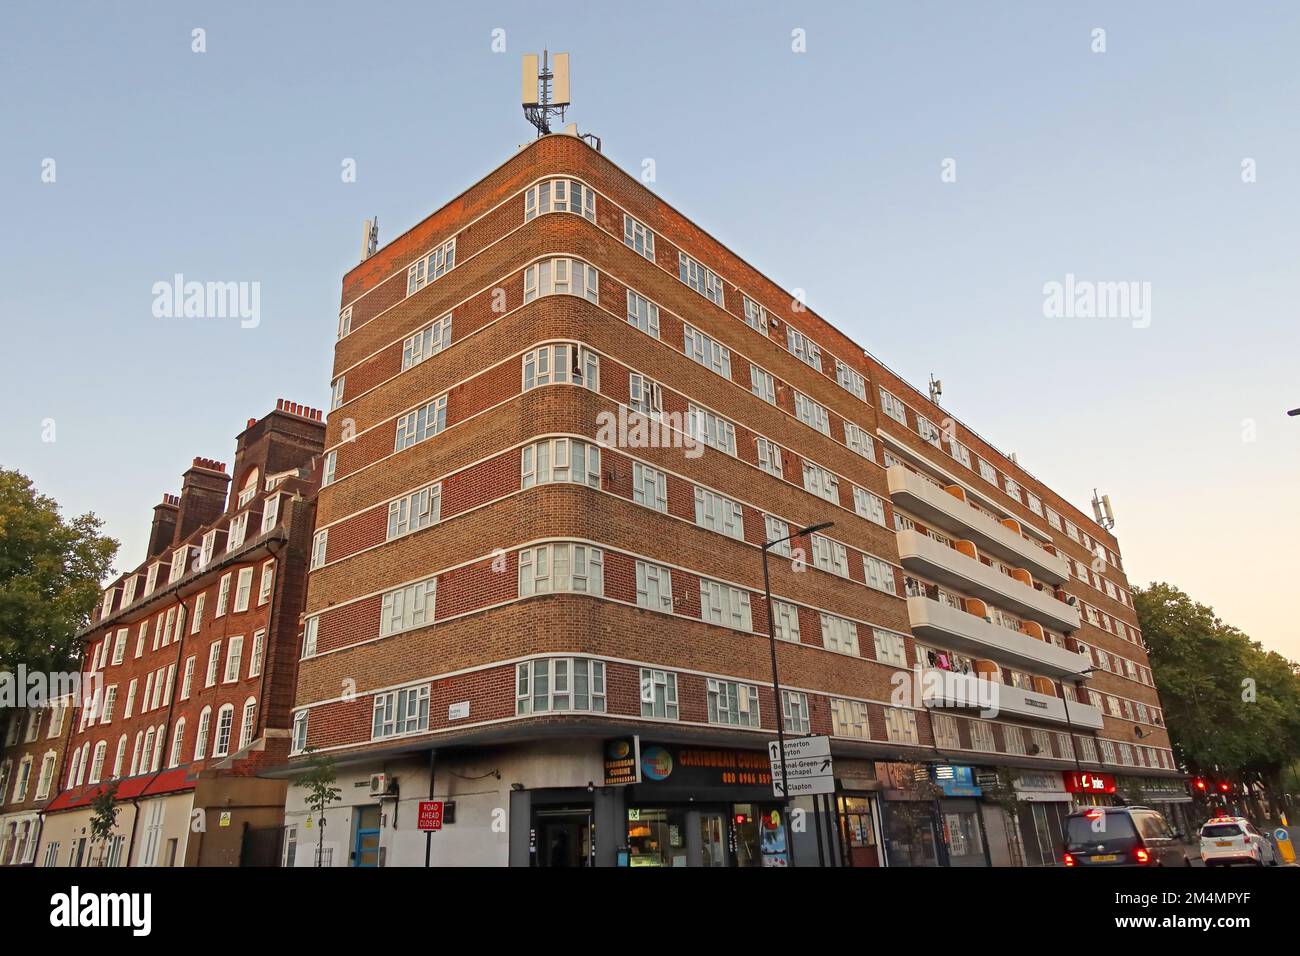 Downs court 1930s immeuble résidentiel, construction de cadre en béton, projet de logement social, Amhurst Rd, Lower Clapton, Londres E8 1AU Banque D'Images